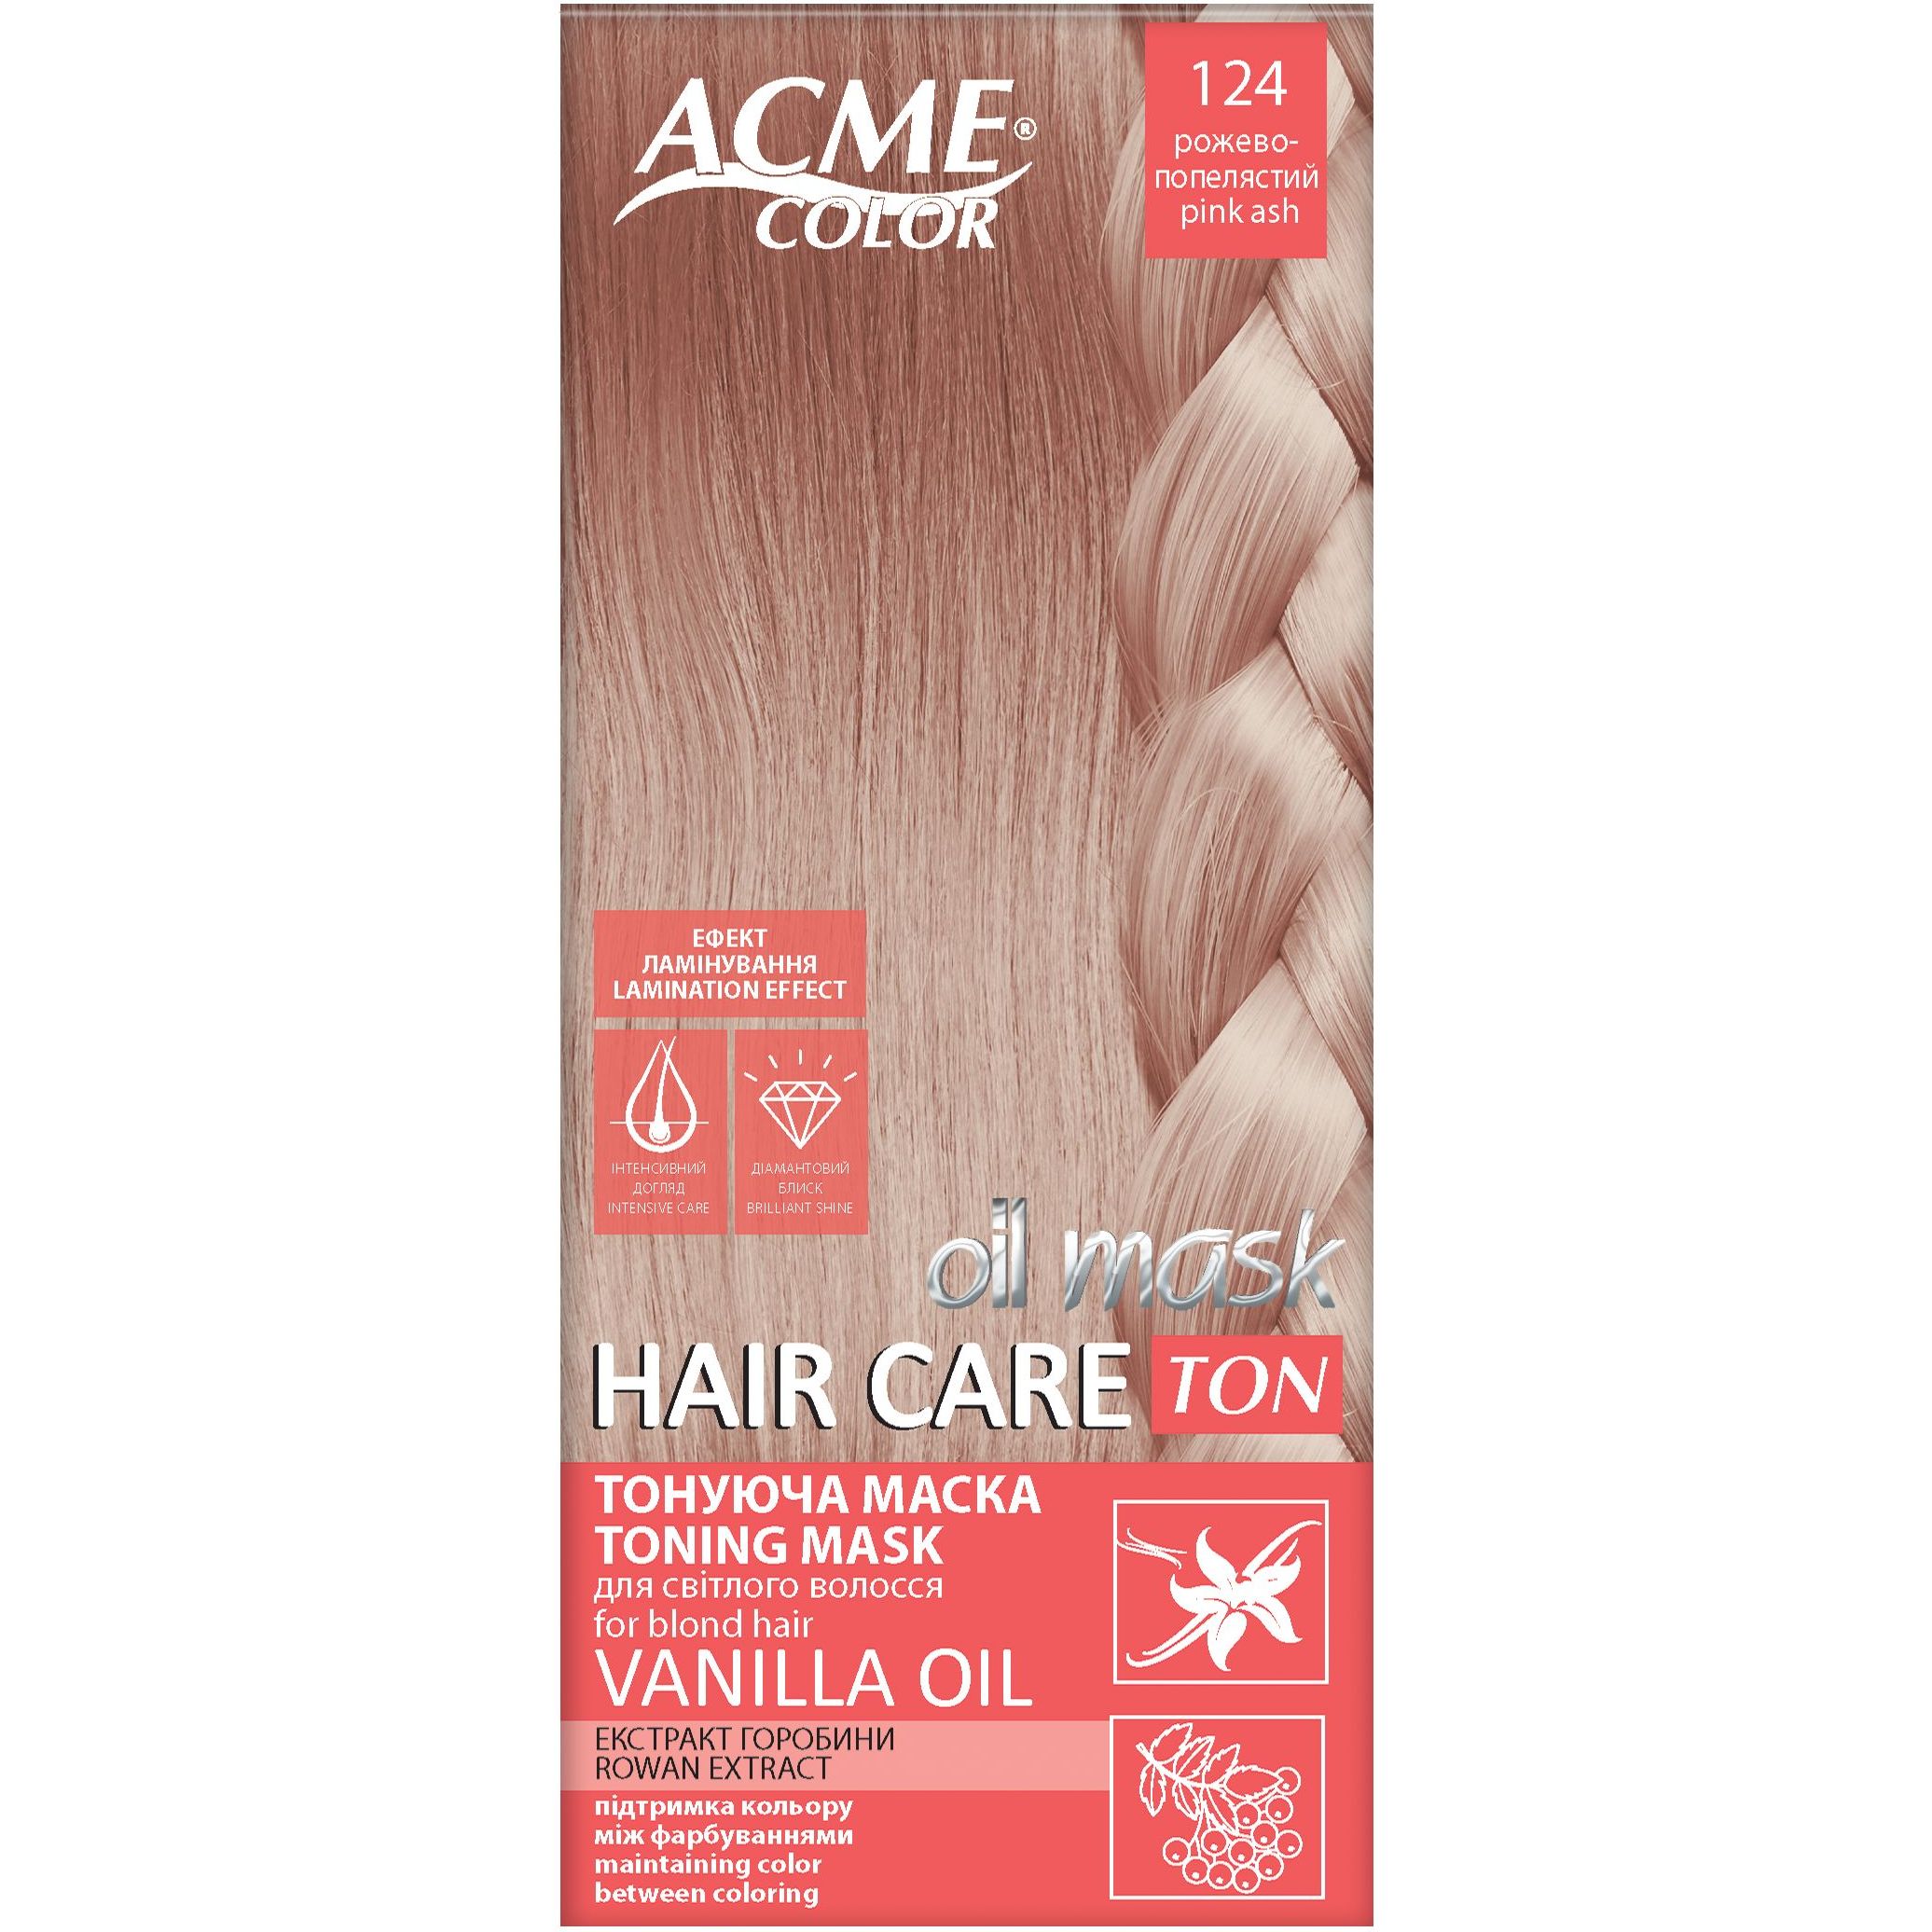 Тонирующая маска для волос Acme Color Hair Care Ton oil mask, тон 124, розово-пепельный, 30 мл - фото 1